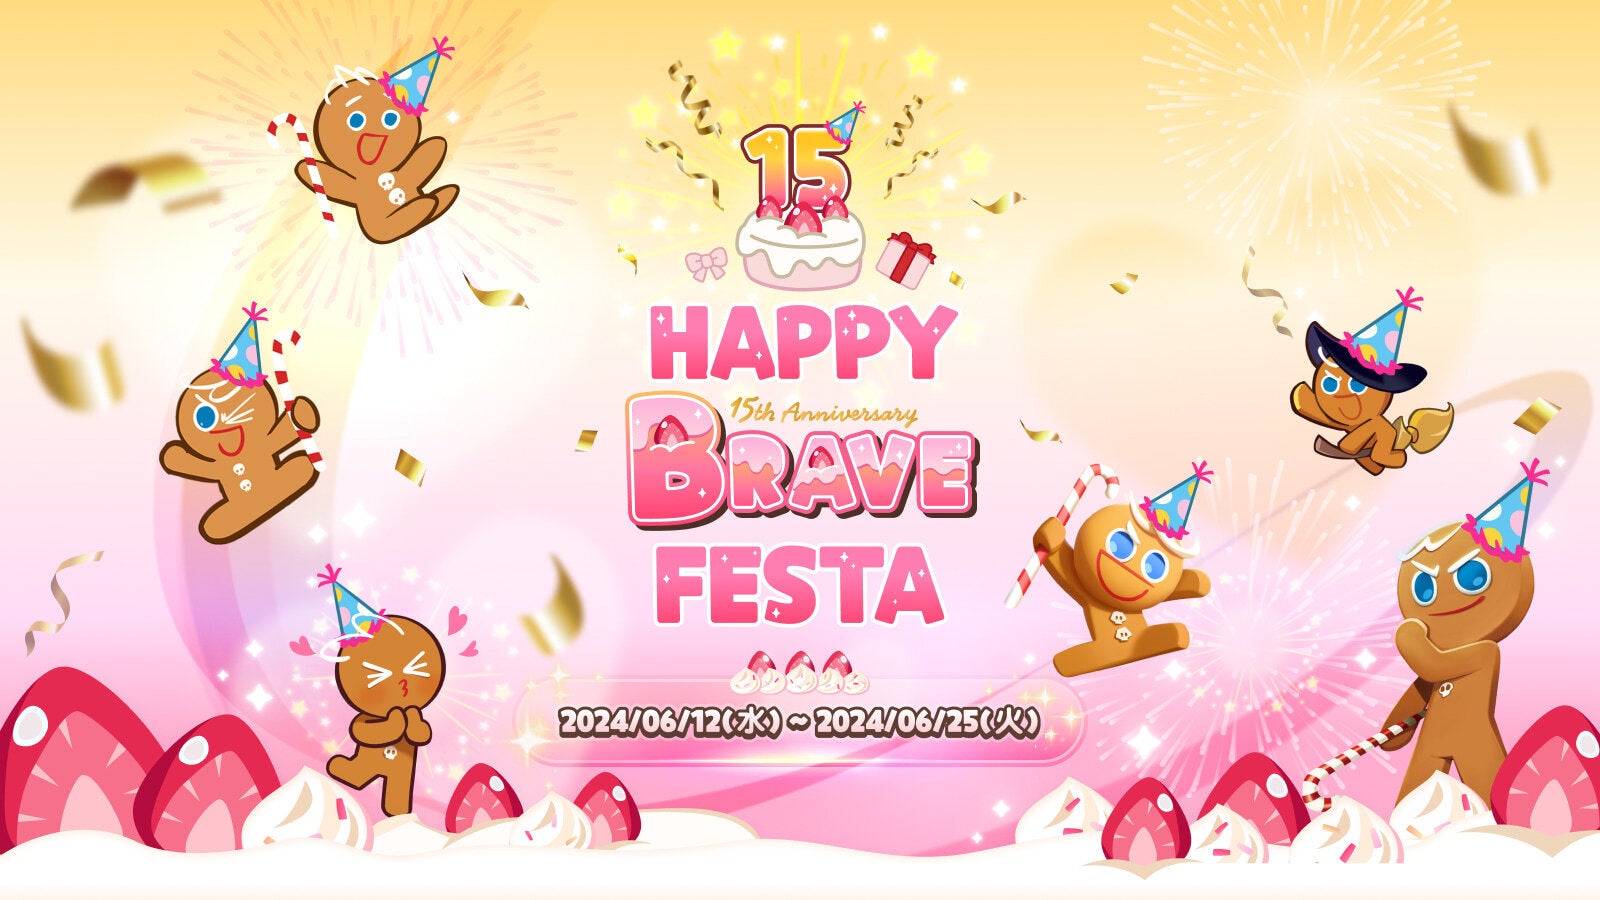 『デヴシスターズ』、勇敢なクッキーの15回目の誕生日を迎え「Happy Brave Festa」開催!